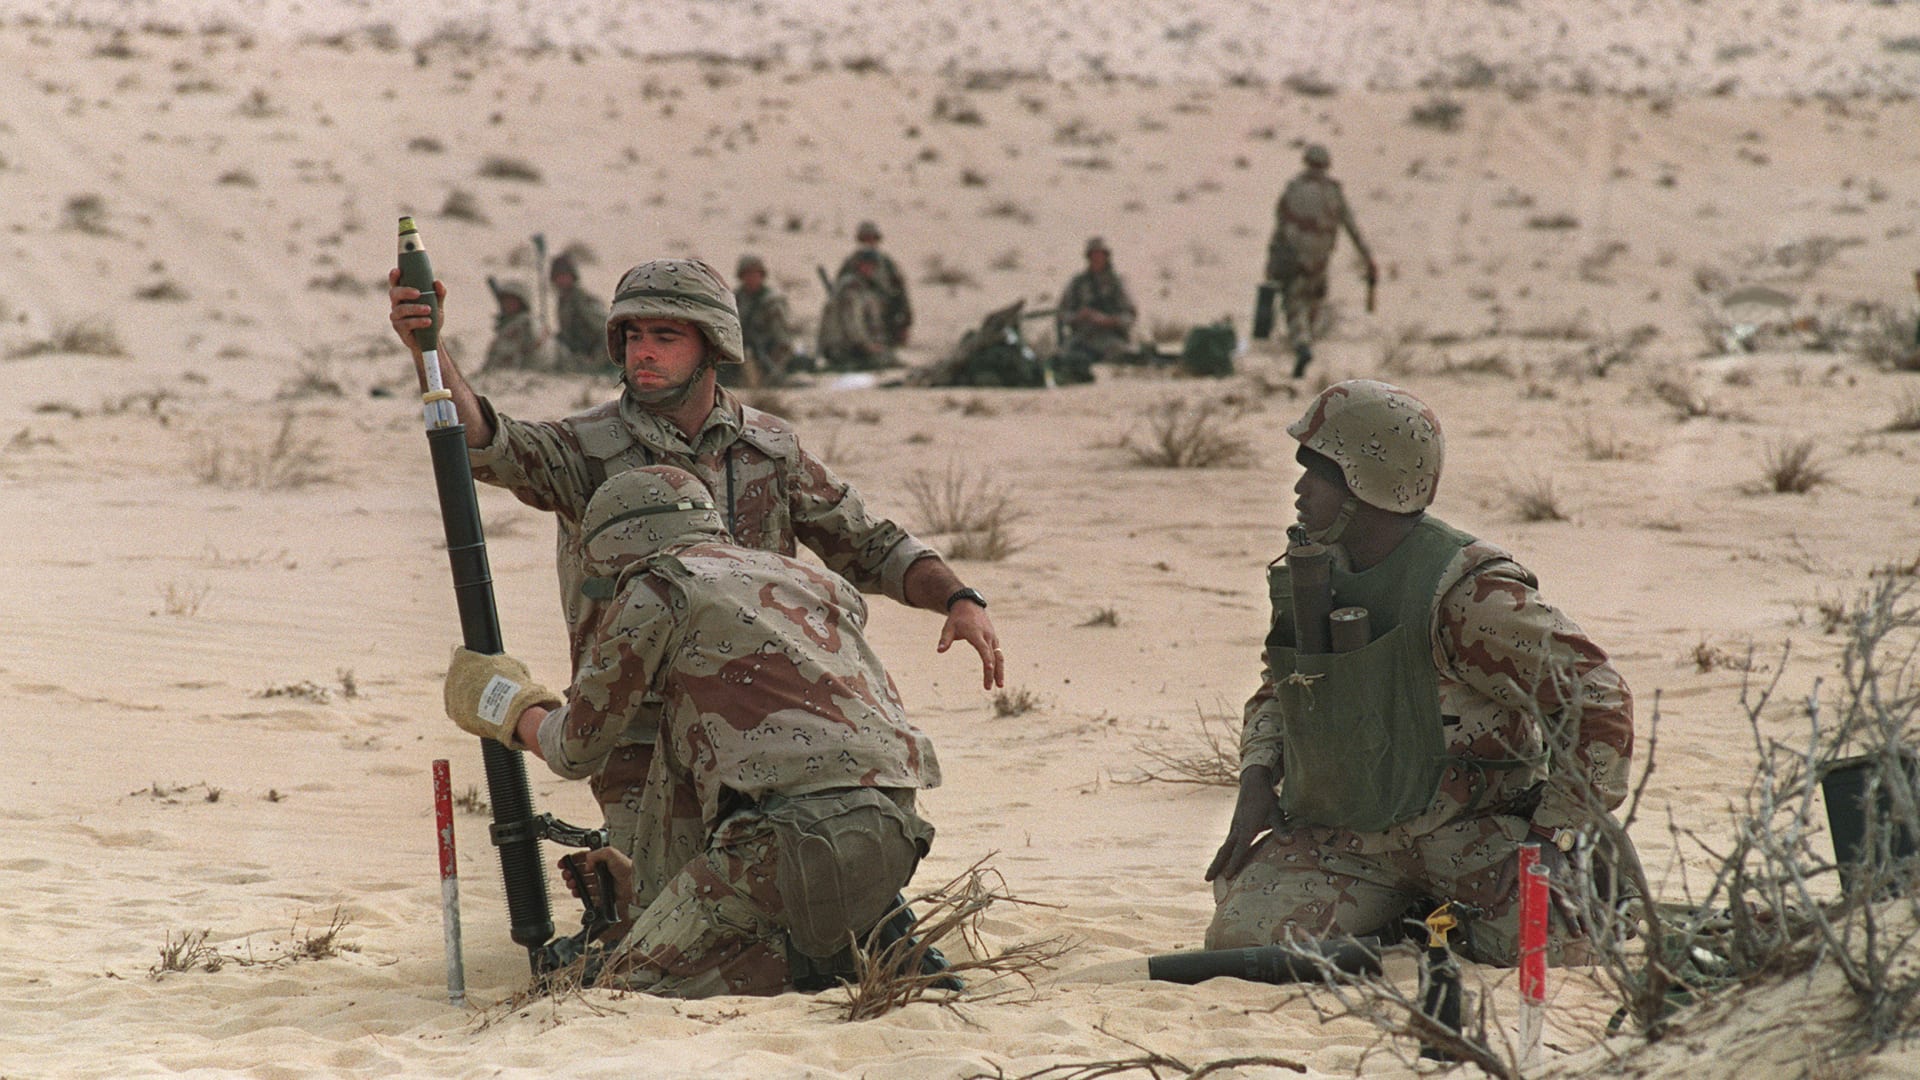 أعراض غريبة وغير مبررة للجنود.. أمريكا تبدأ دراسة كبيرة حول "مرض حرب الخليج"